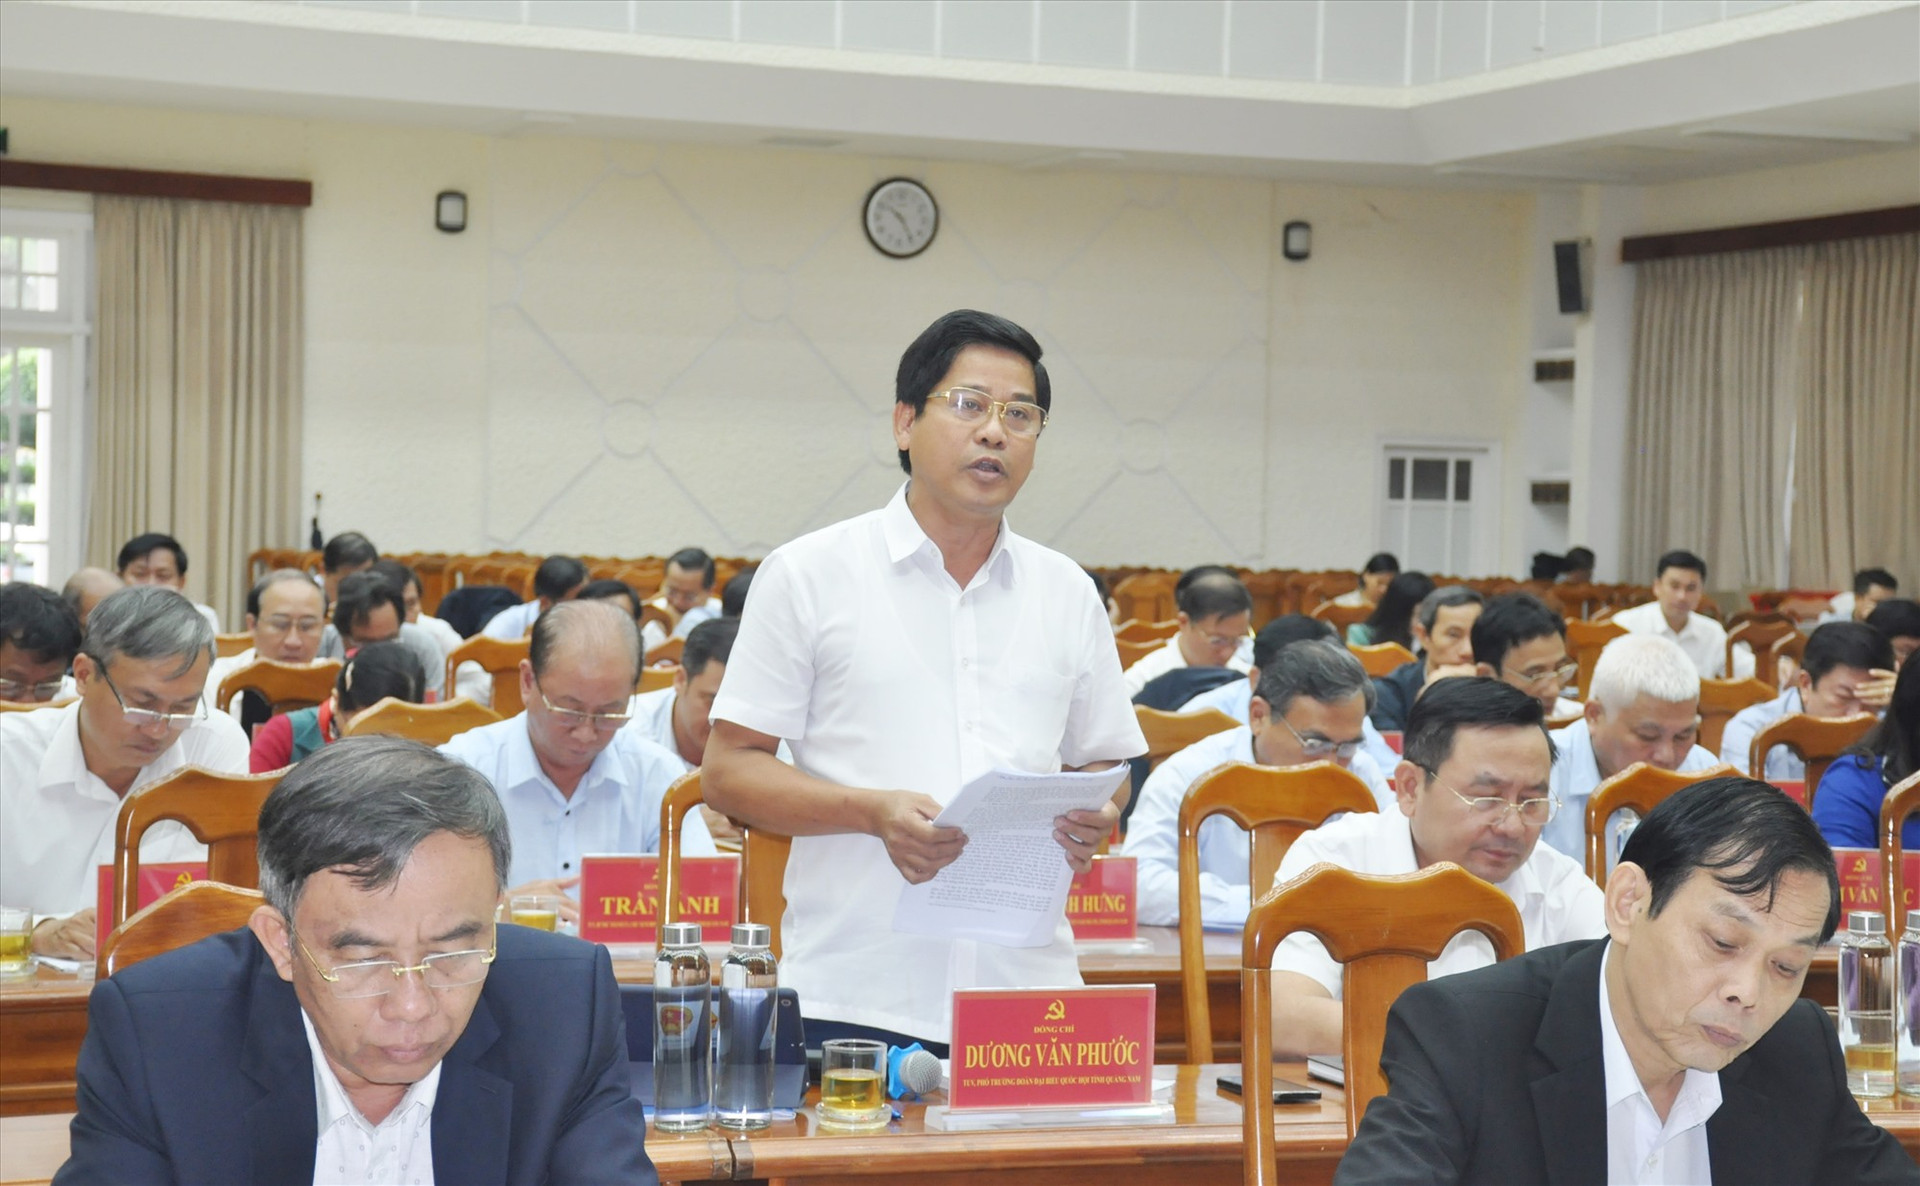 Trưởng đoàn ĐBQH tỉnh Dương Văn Phước nêu thực trạng thiếu biên chế viên chức tại các Chi nhánh Văn phòng ĐKĐĐ cấp huyện tại Hội nghị Tỉnh ủy lần thứ 13 (khóa XXII). Ảnh: N.Đ